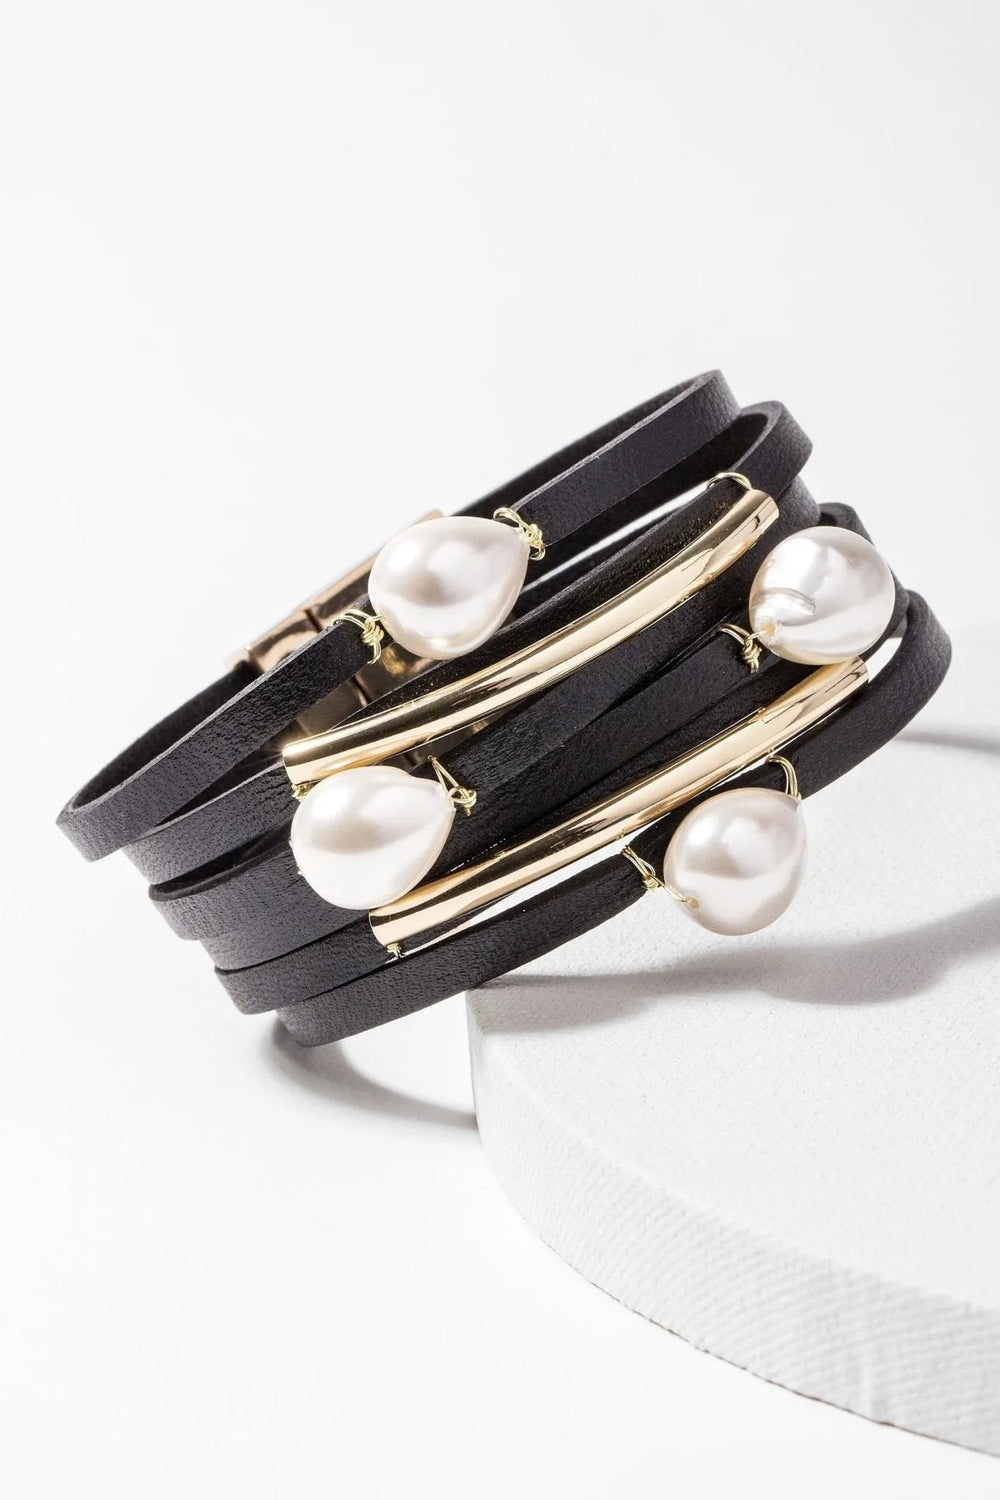 Achai Pearl Double Wrap Leather Bracelet Black